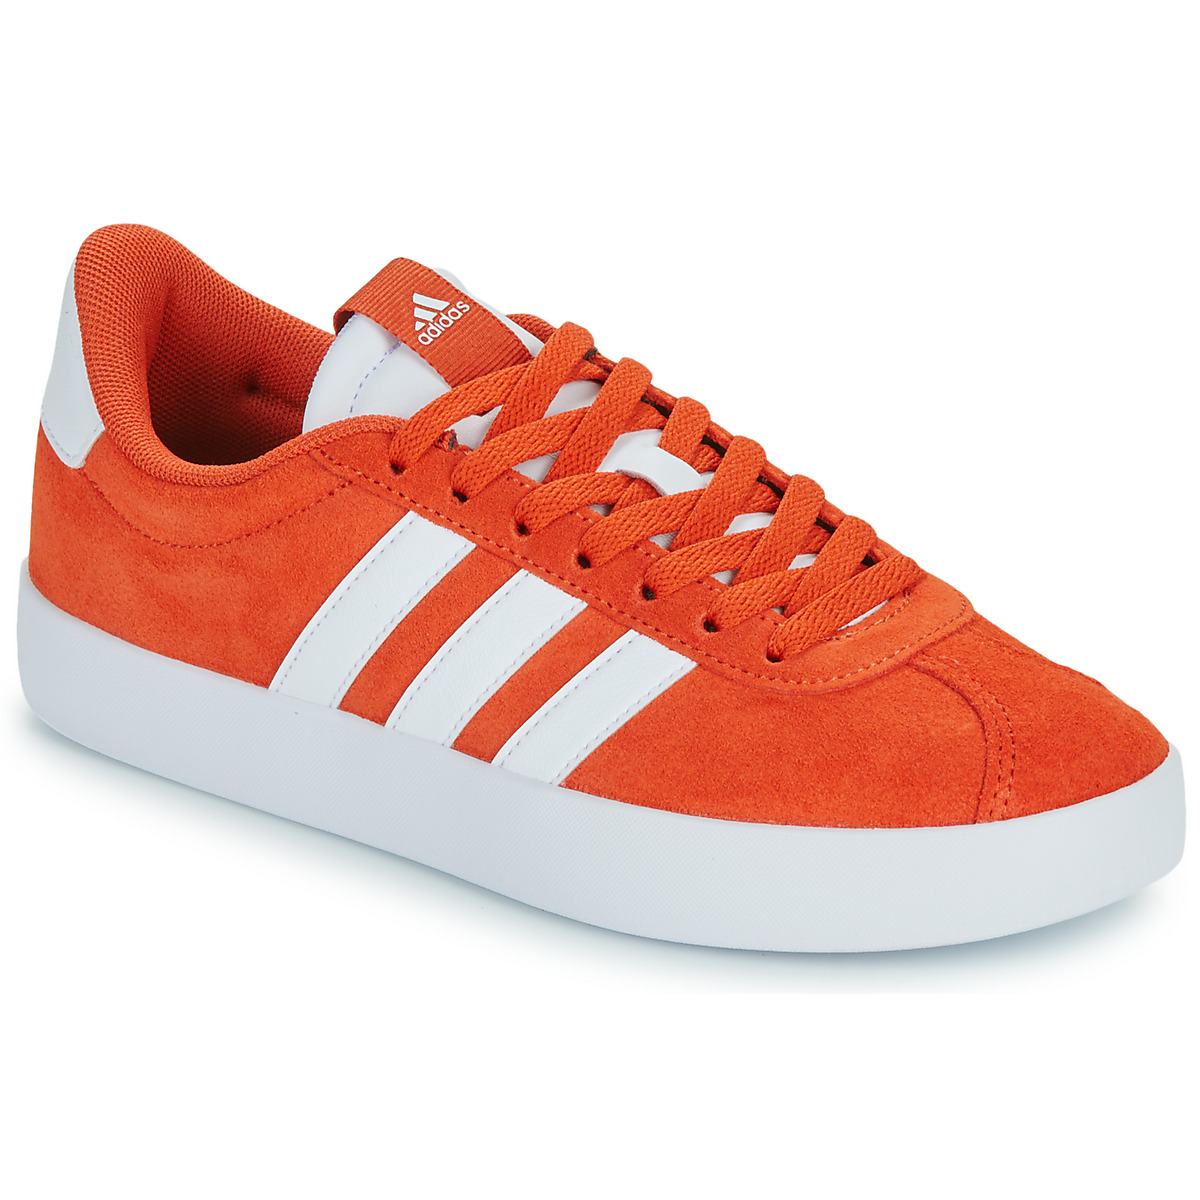 Adidas Vl Court 3.0 Orange